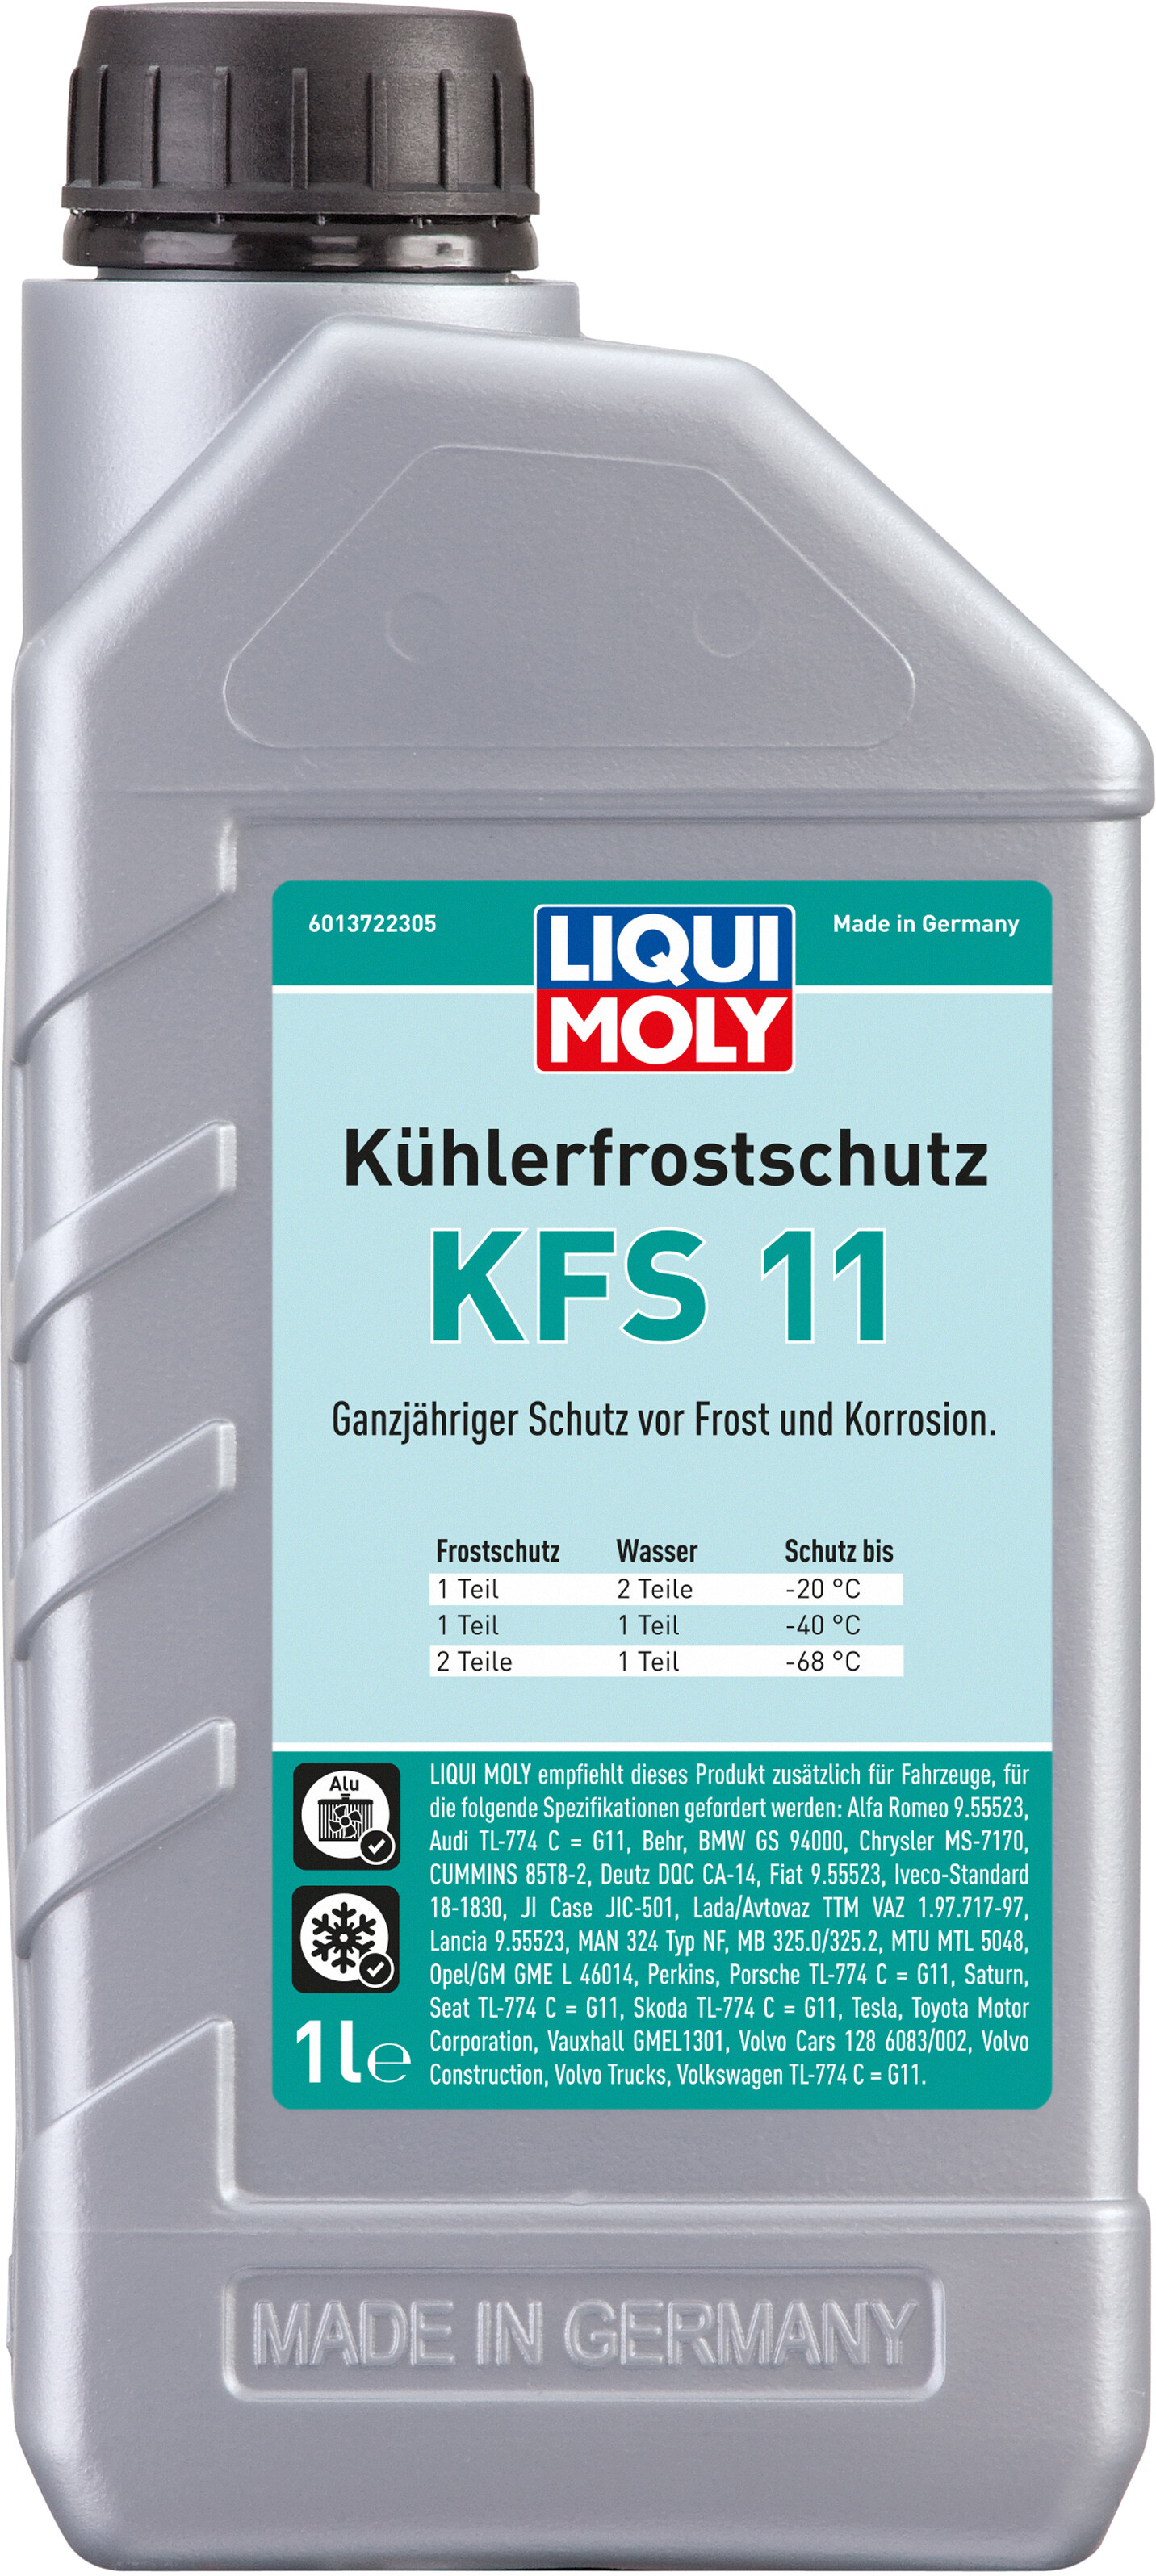 Liqui Moly Kühlerfrostschutz KFS 12 Evo 5 Liter 5L